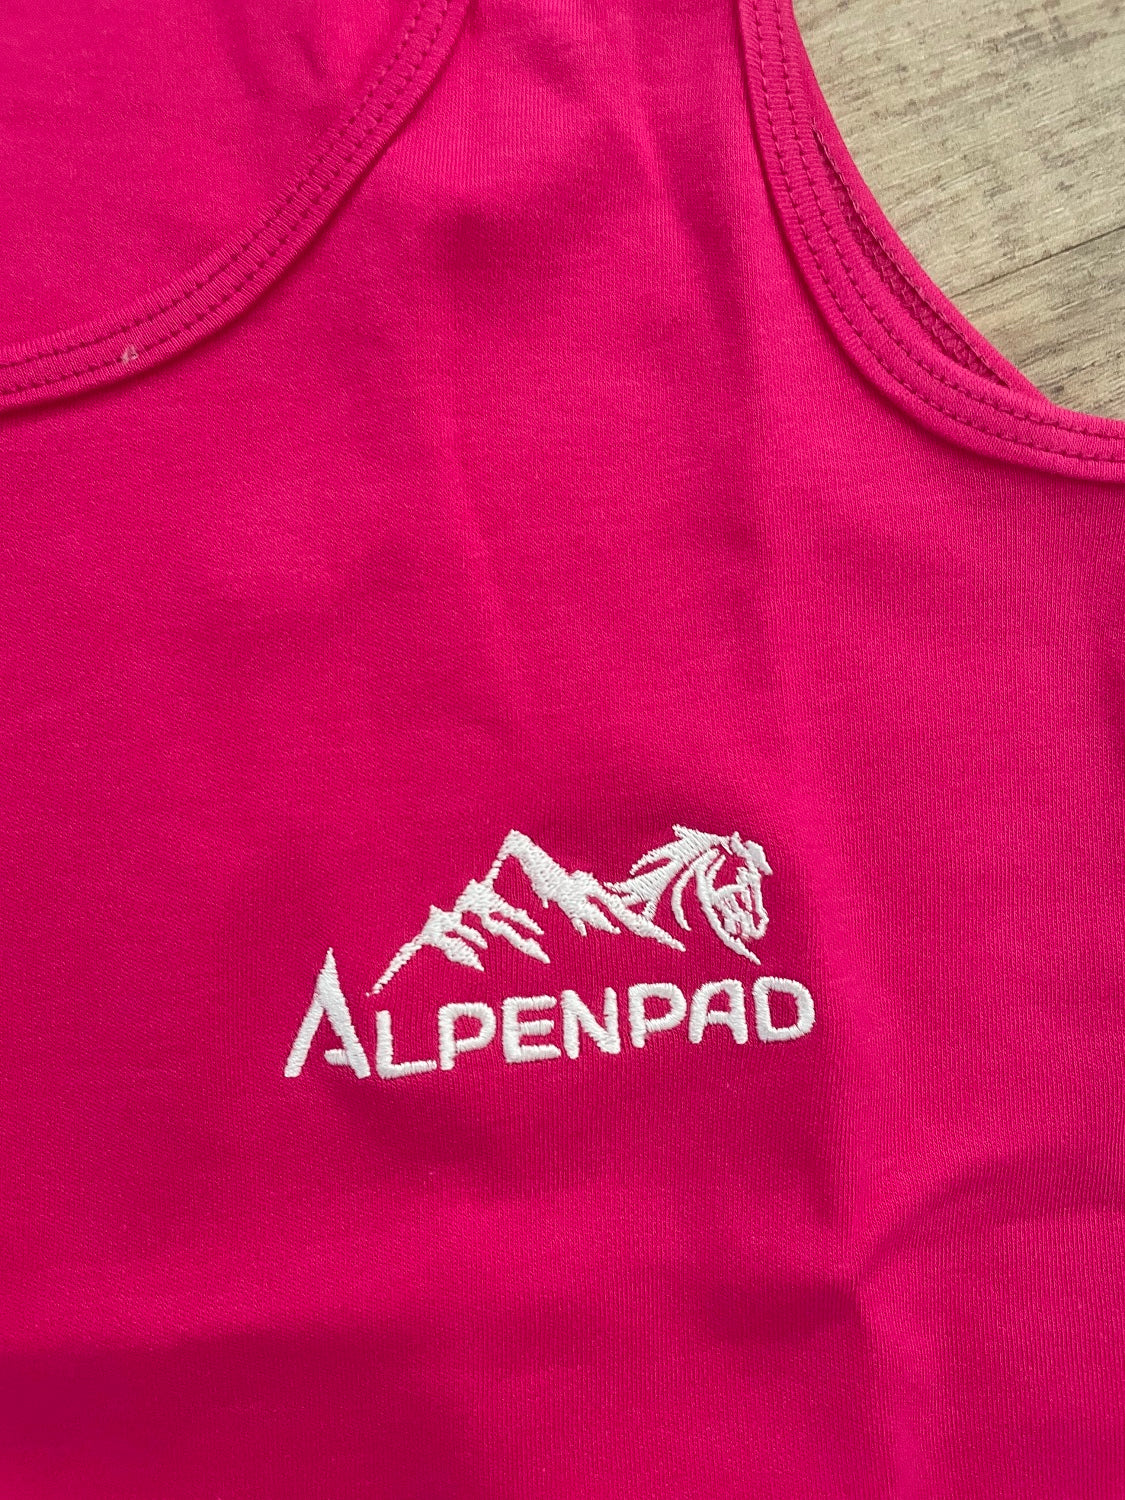 AlpenPad – Besticktes Baumwoll Top – Pink - Horse_Art_Bodensee